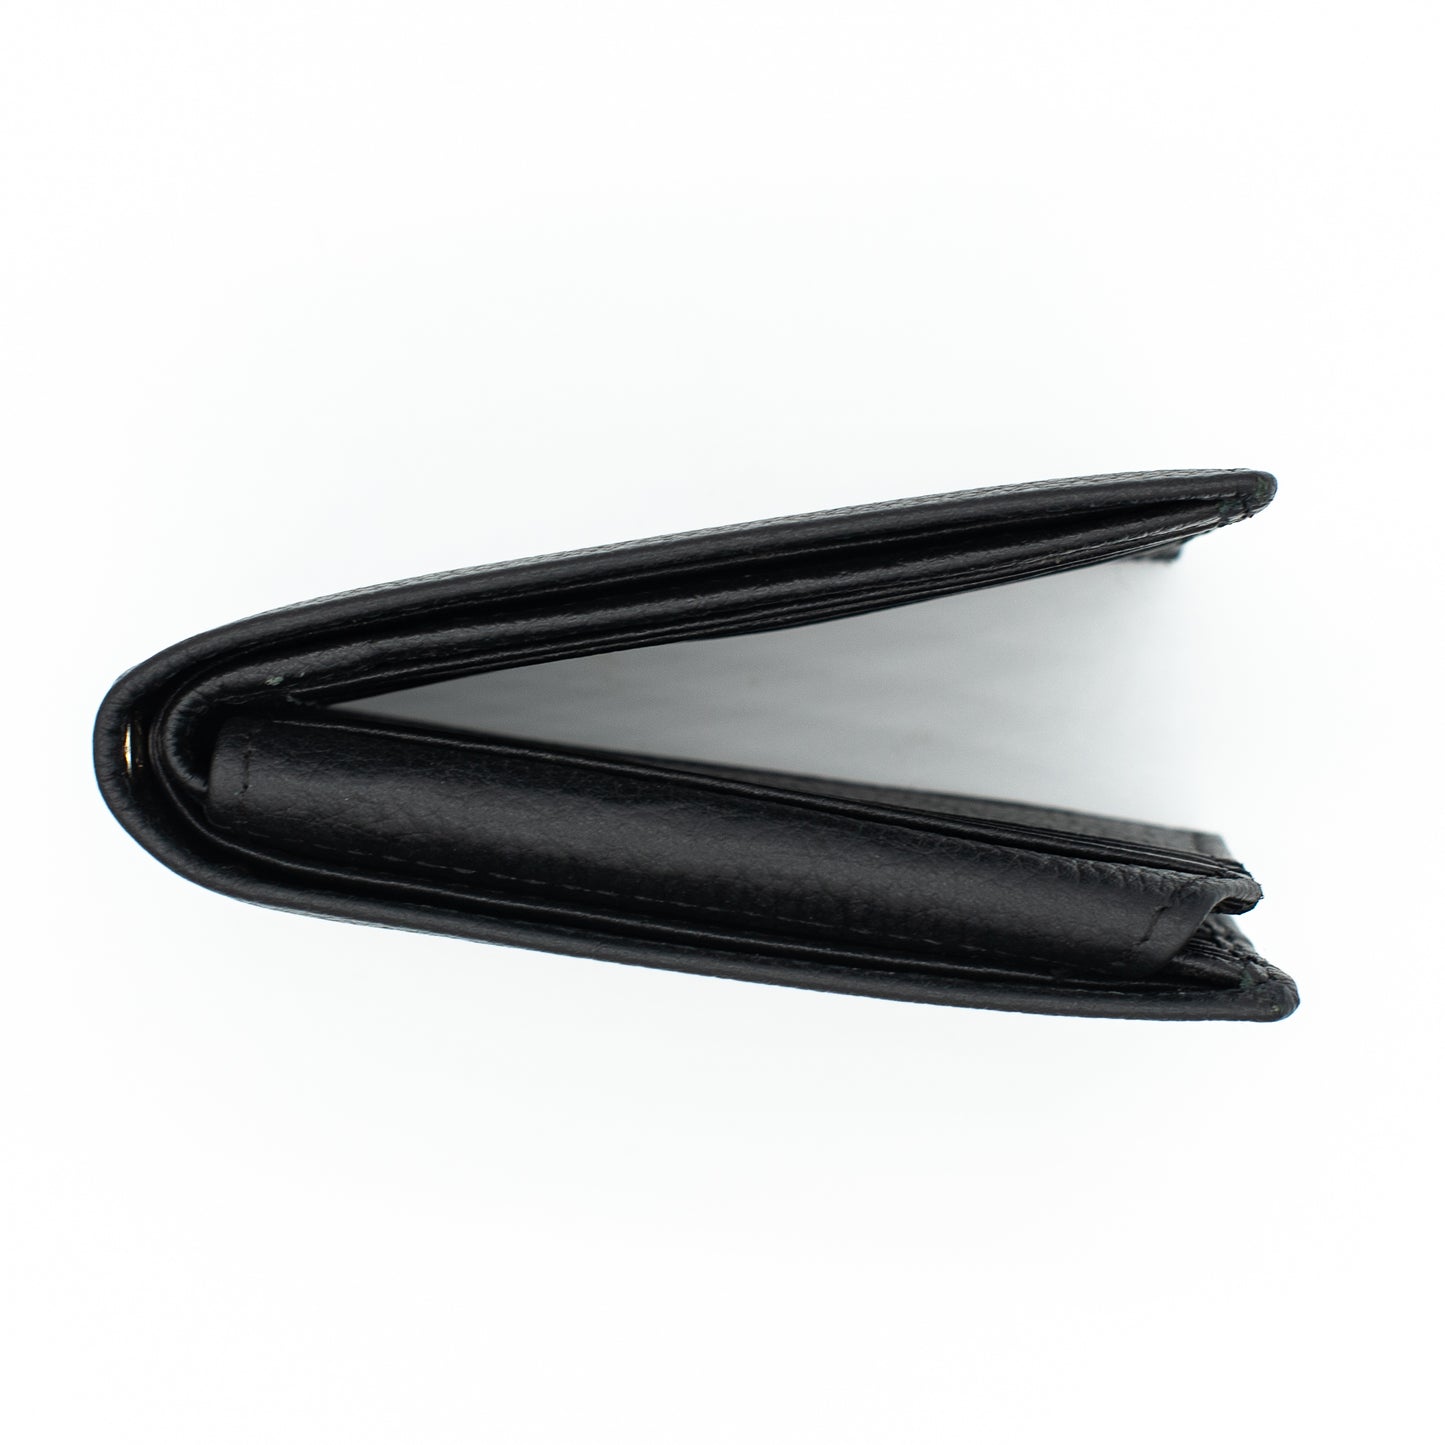 RFID Safe Leather Bi-fold Wallet for Men Model : J521 HO